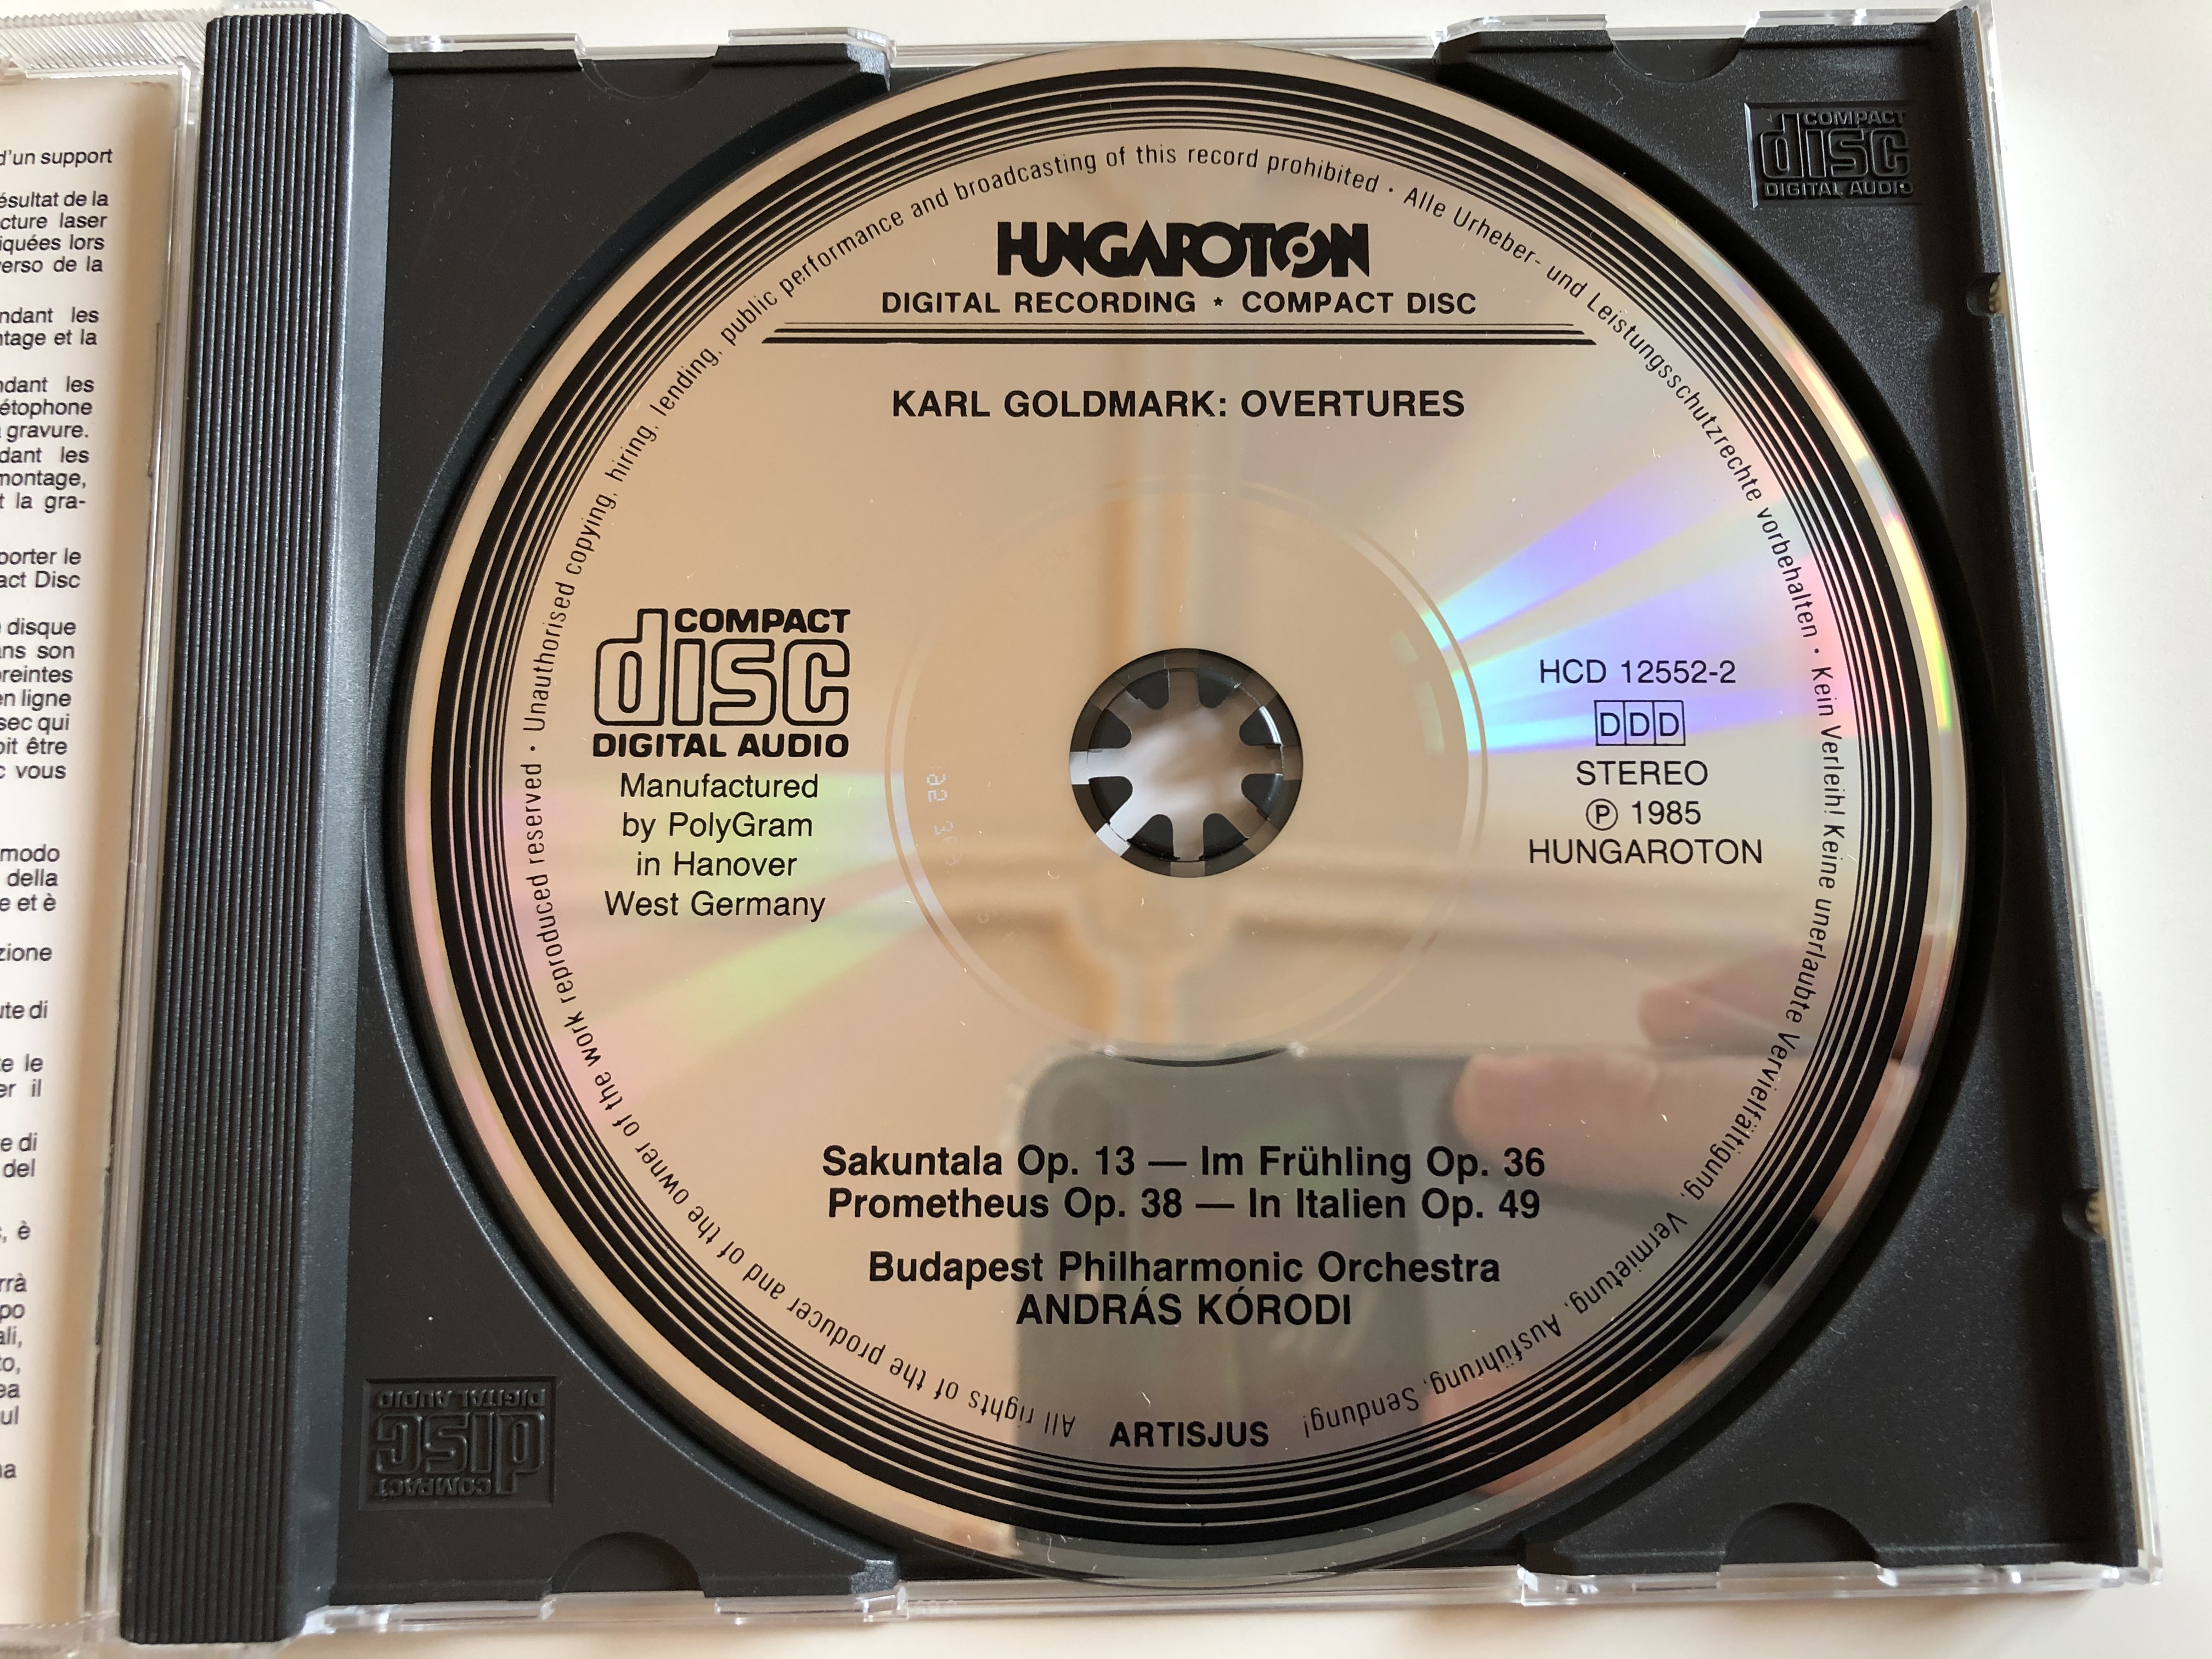 karl-goldmark-overtures-sakuntala-im-fr-hling-prometheus-in-italien-budapest-philharmonic-orchestra-andr-s-k-rodi-hungaroton-audio-cd-1985-stereo-hcd-12552-2-7-.jpg